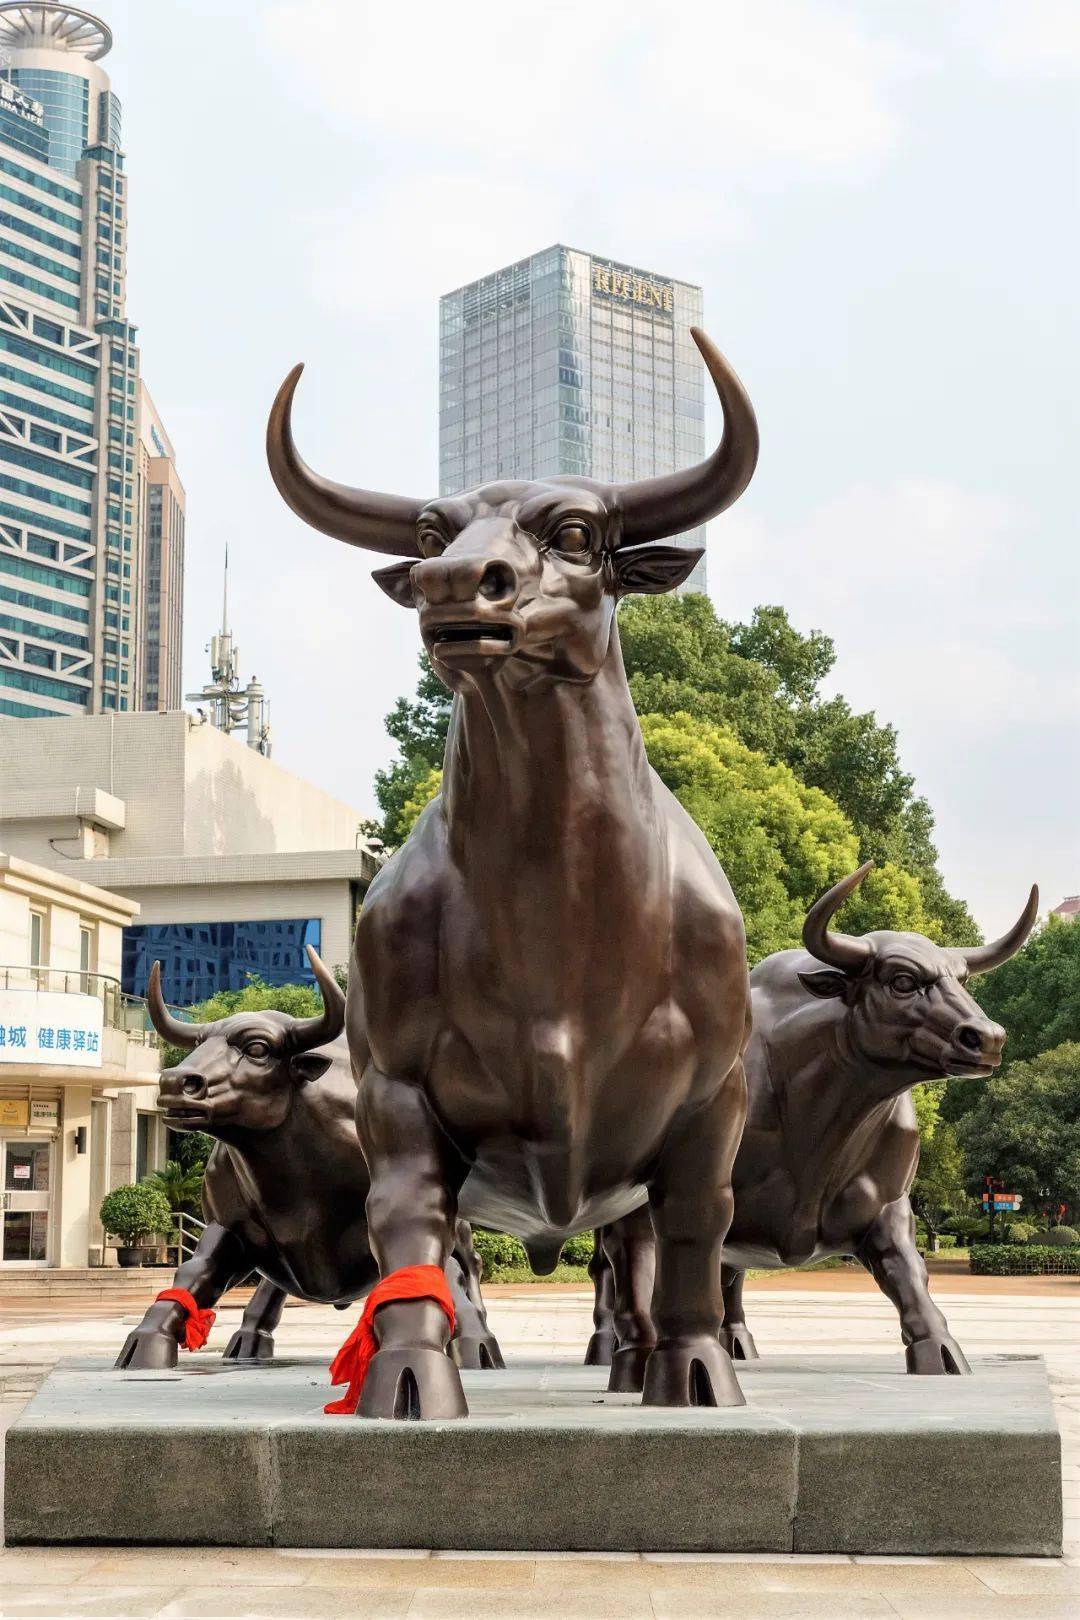 作品落地中国金融中心,这位大东软校园里的雕塑艺术家